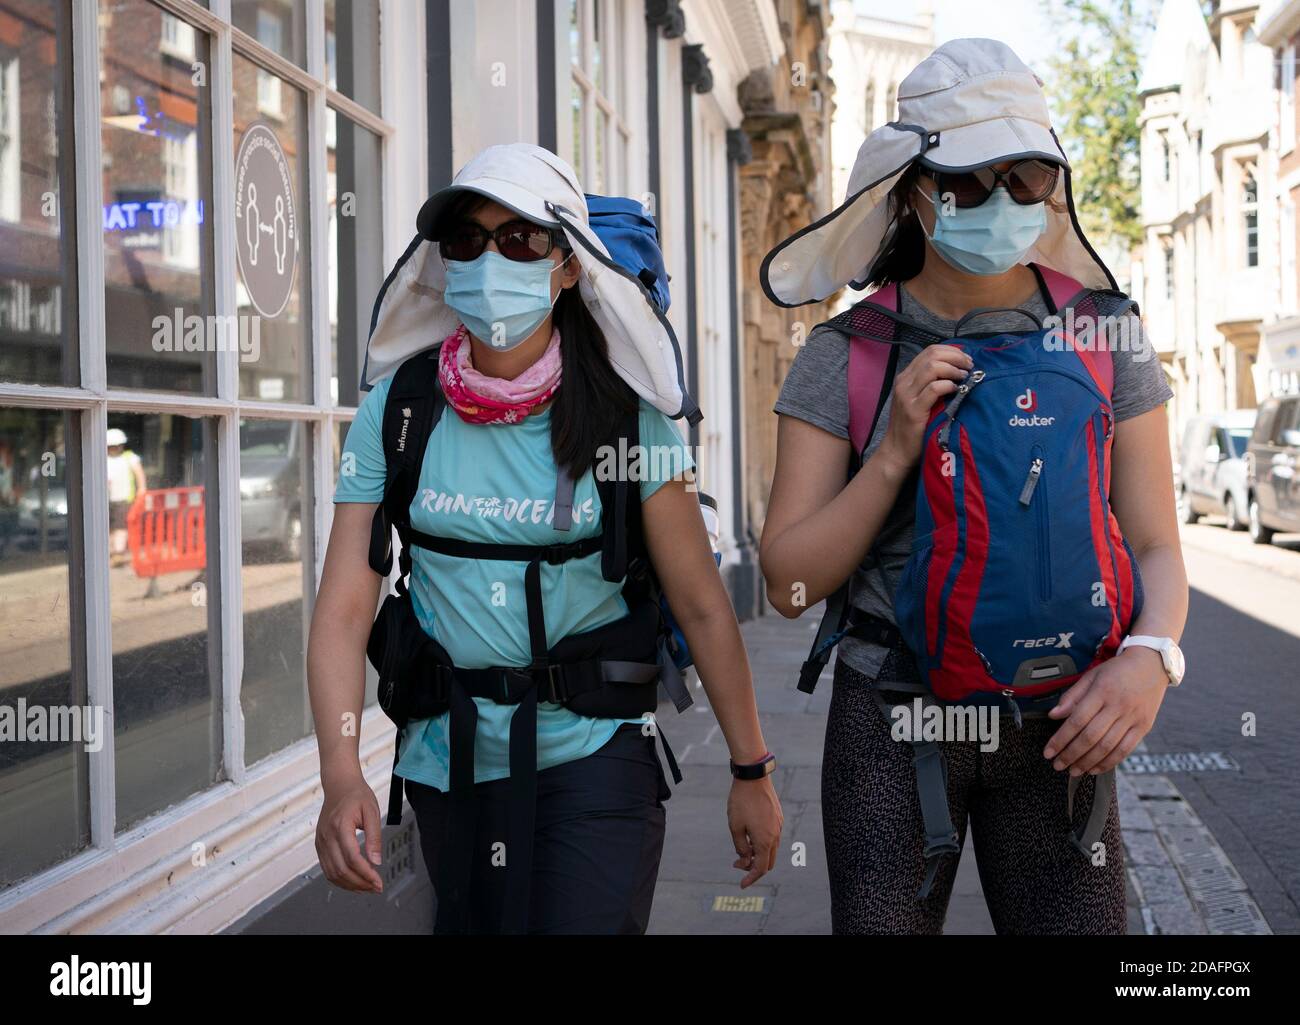 Deux touristes vêtus de chapeaux et de masques Legionairre, se promontent dans le centre-ville de Cambridge pendant la pandémie COVID 19 de 2020 Banque D'Images